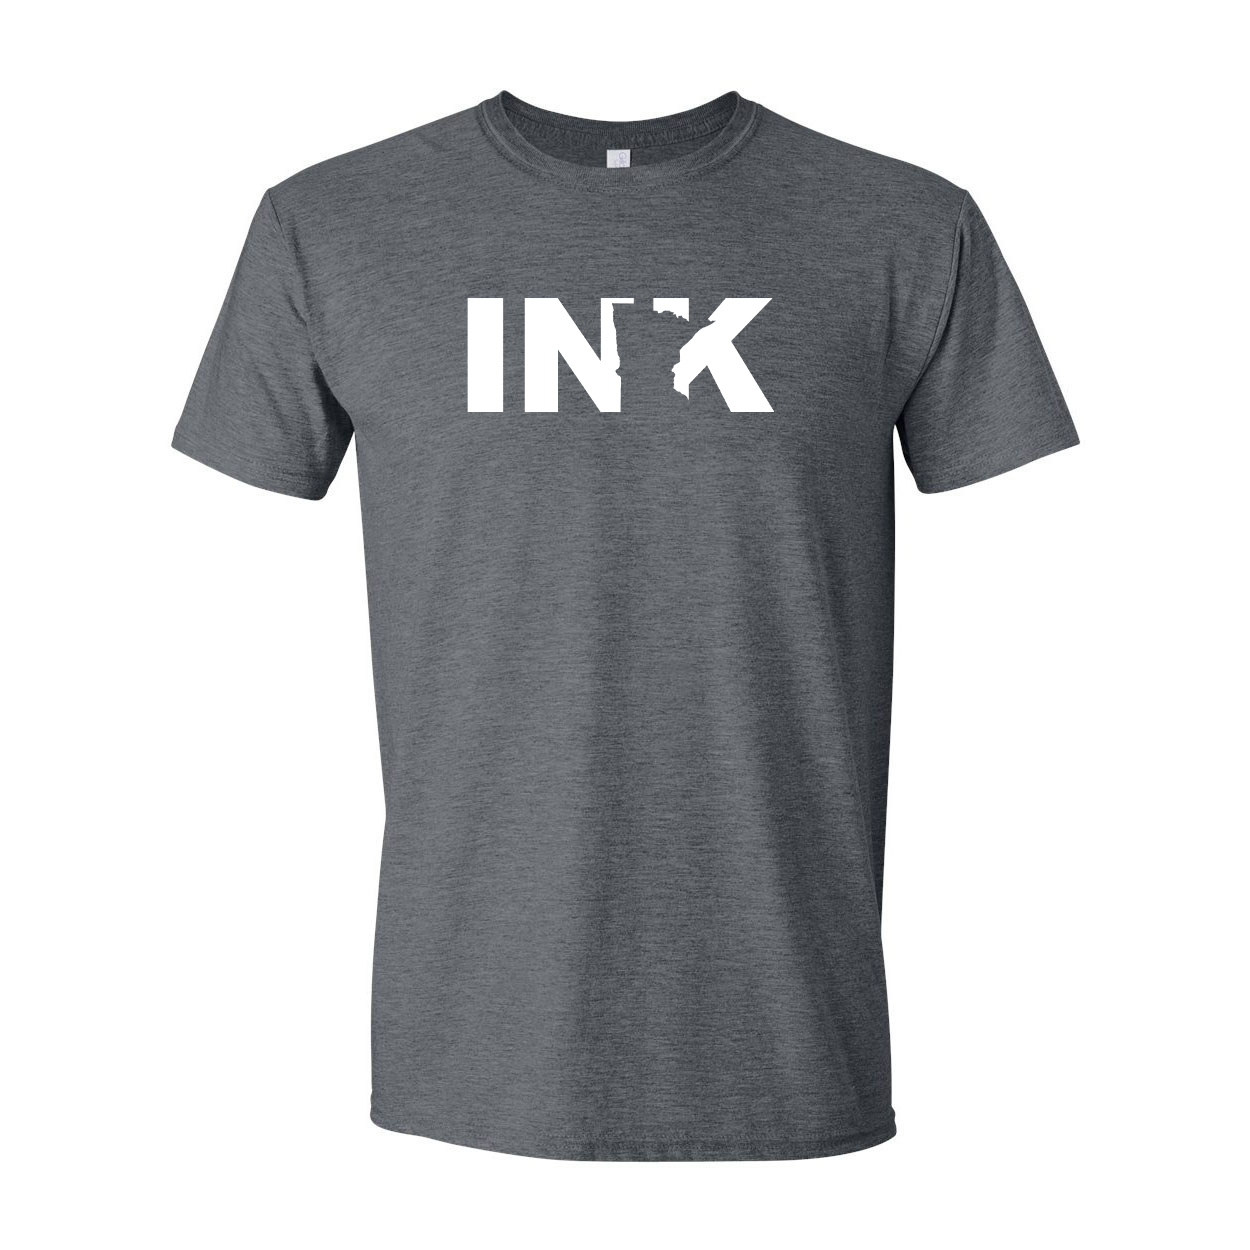 Ink Minnesota Classic T-Shirt Dark Heather Gray (White Logo)